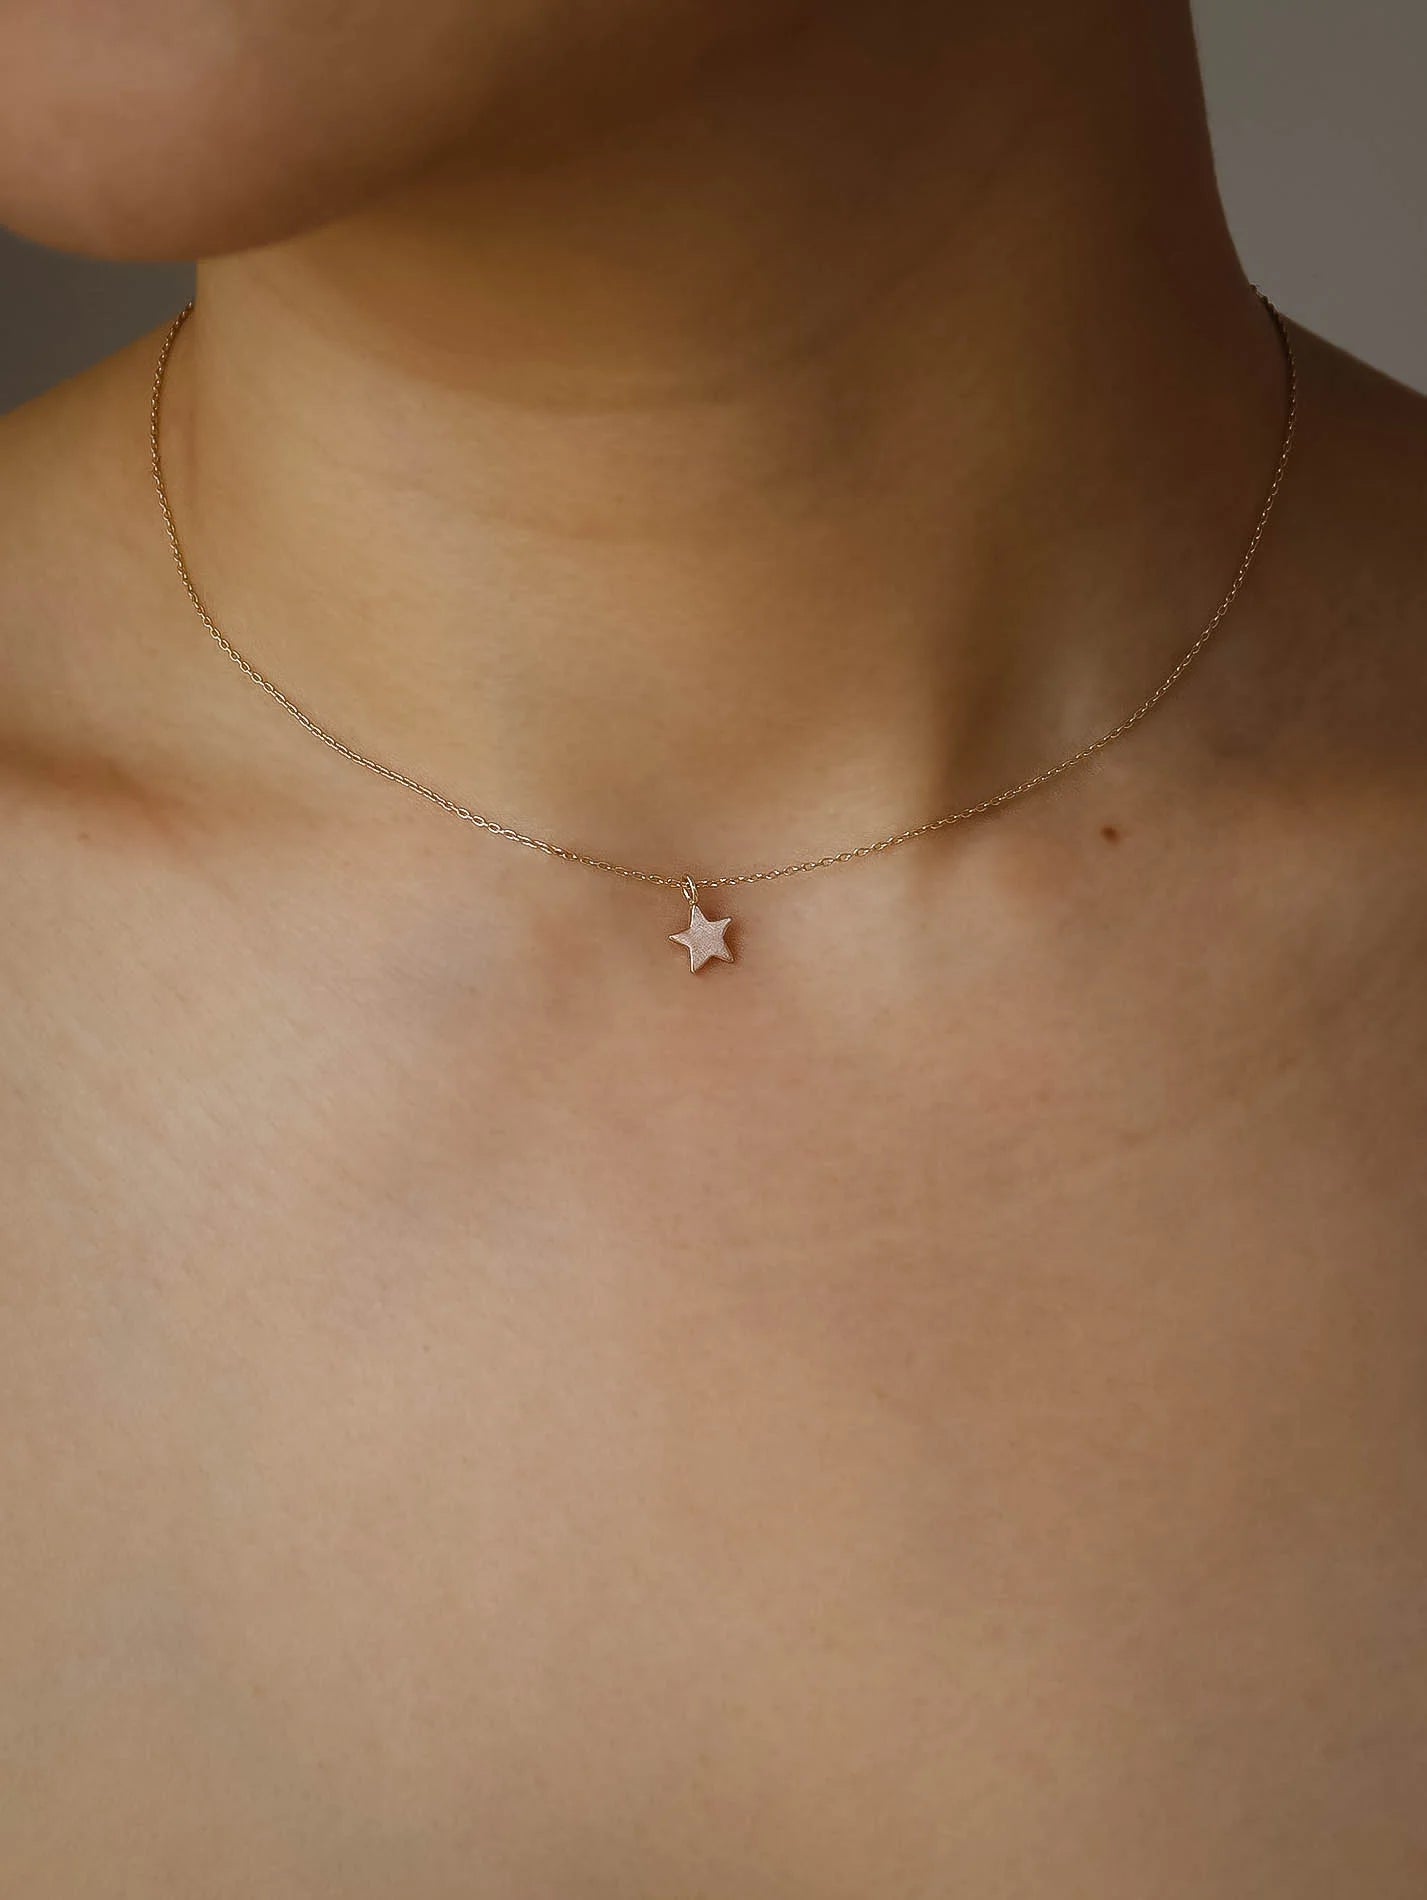 Stellar necklace